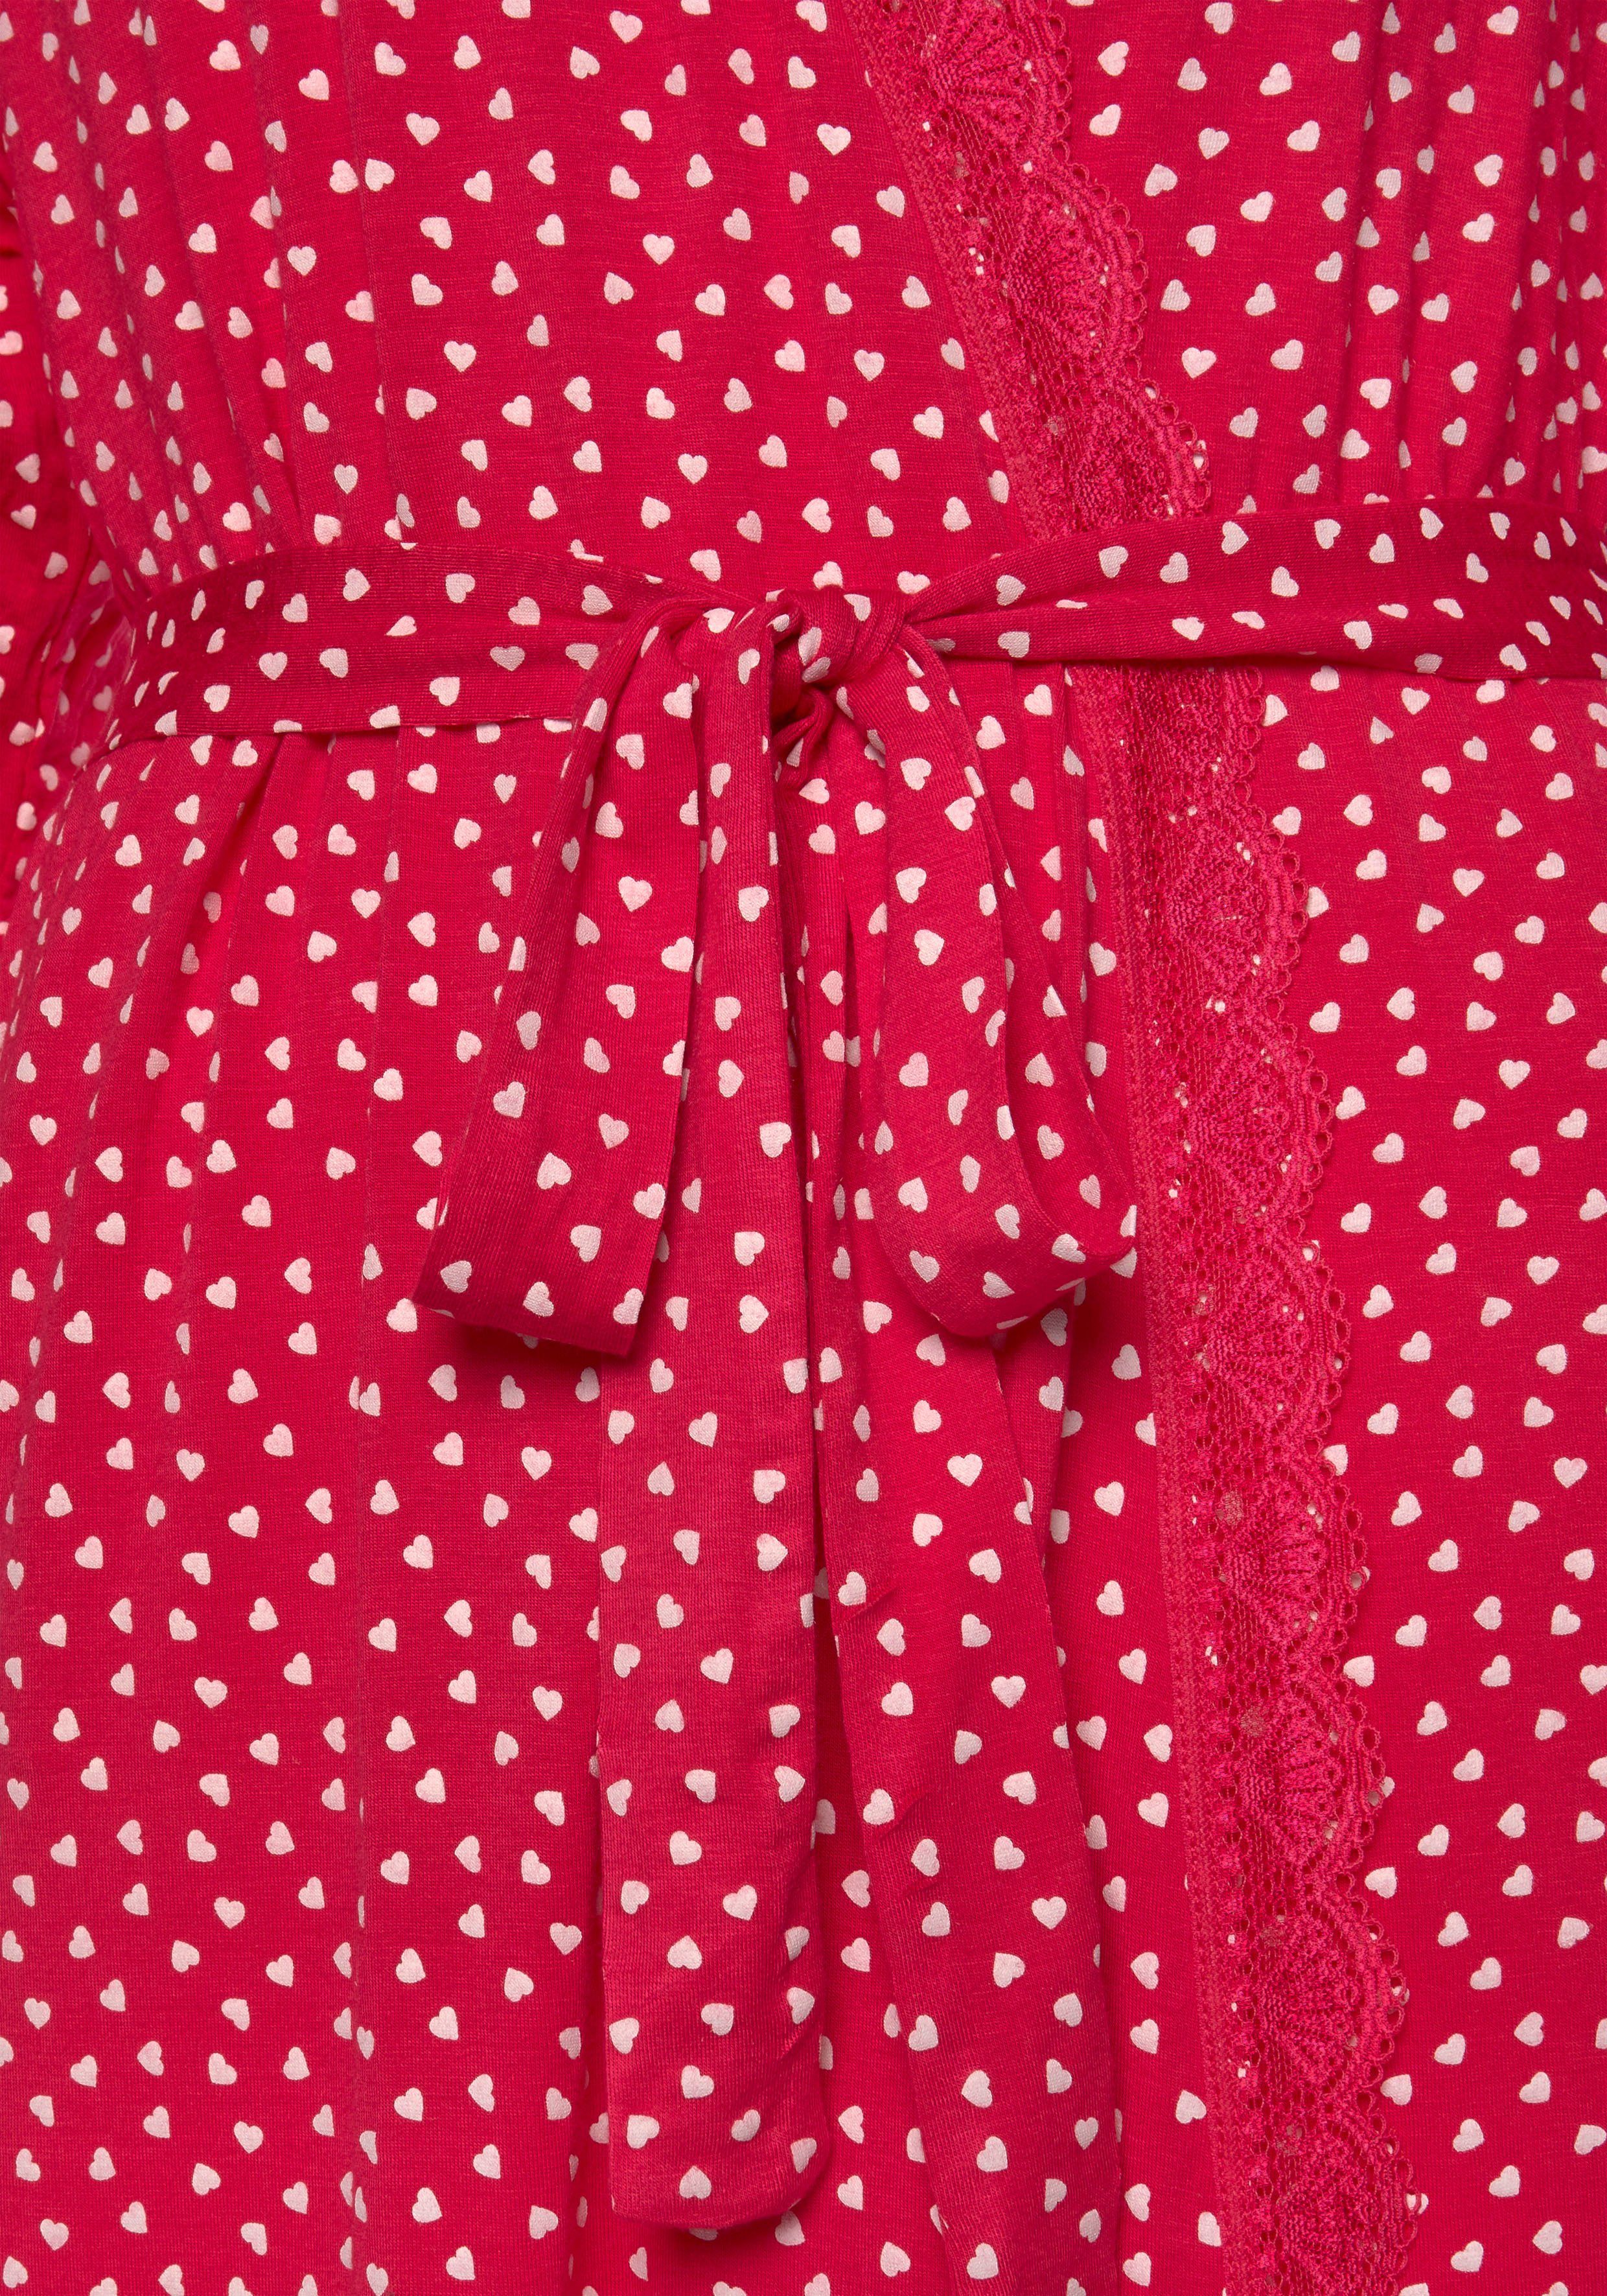 Spitze Gürtel, mit s.Oliver pink-gemustert Single-Jersey, Herzchendruck Kimono, Kurzform, und